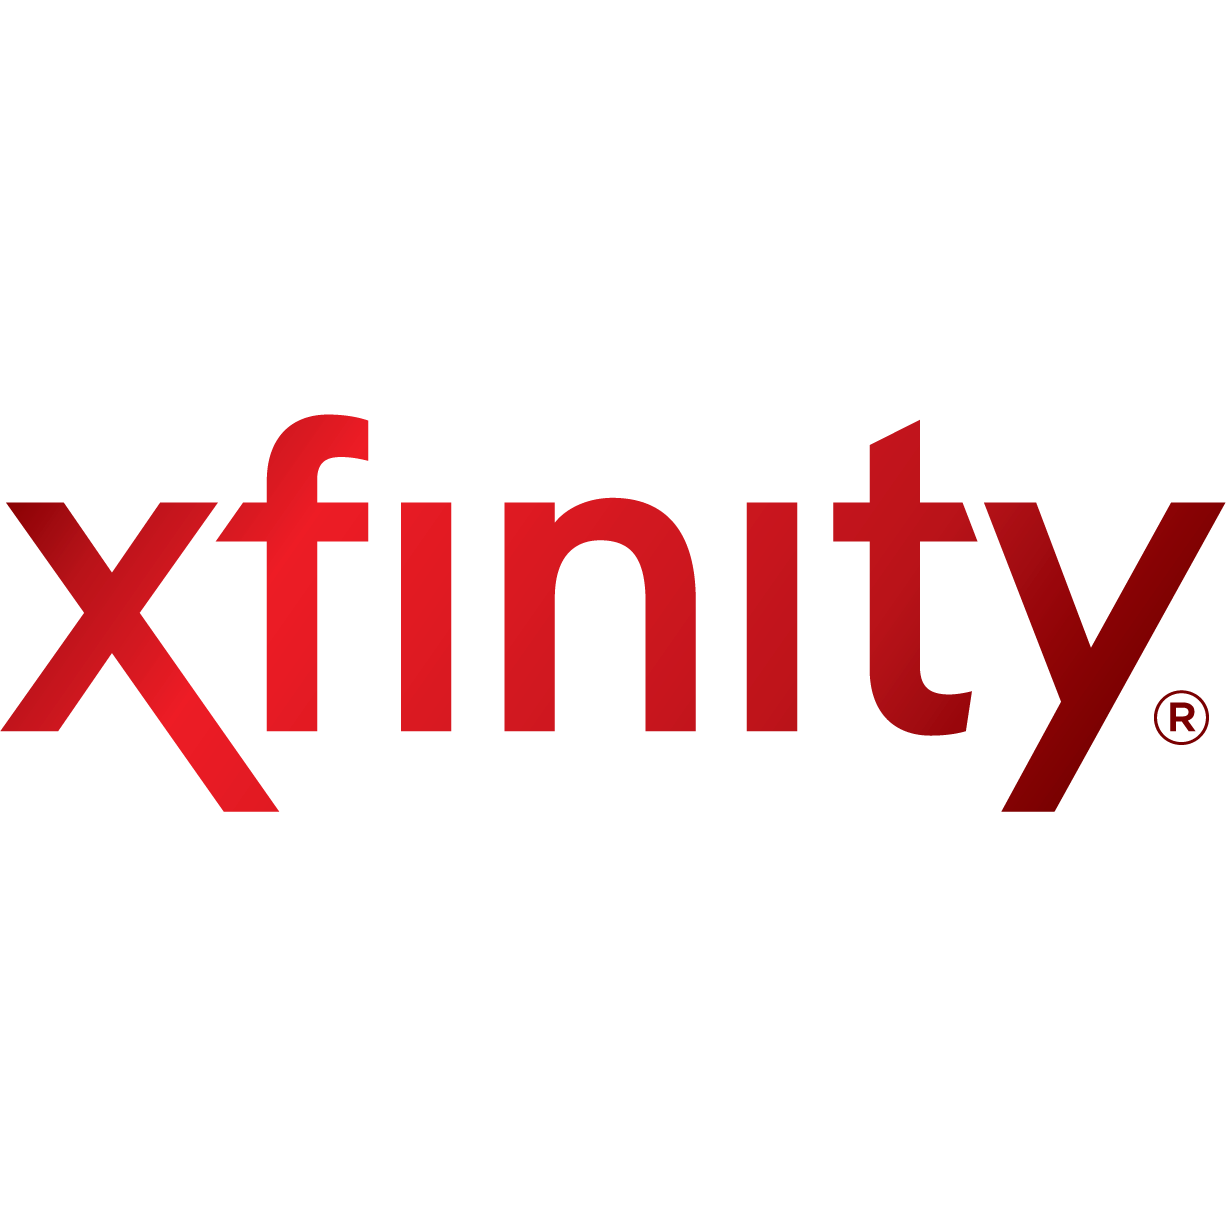 Xfinity streampix